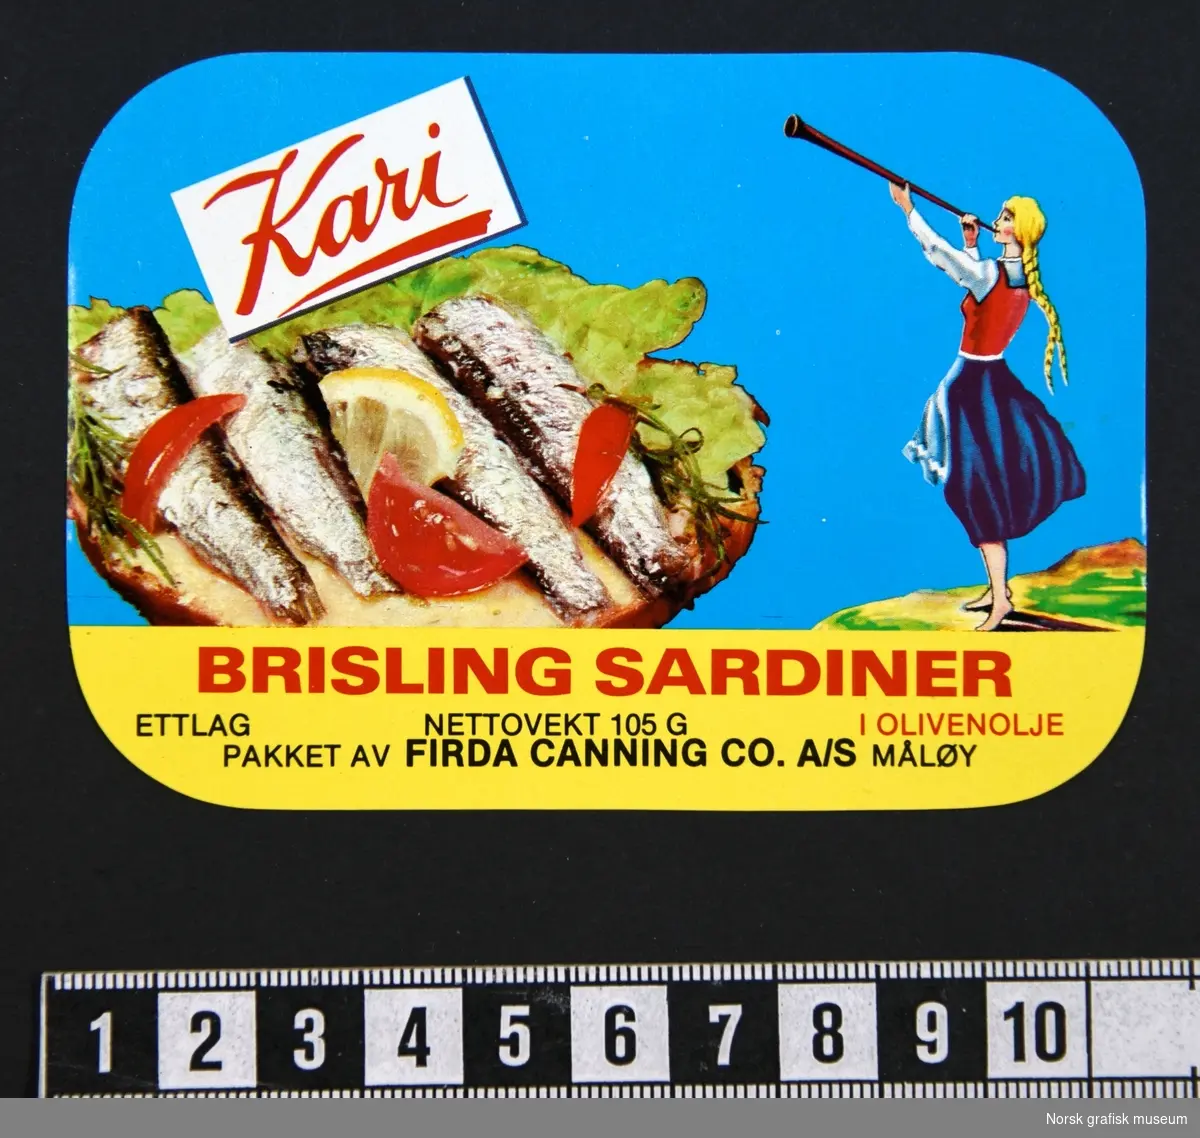 Etikett med blå bakgrunnsfarge, en illustrasjon av en kvinne med blonde fletter som blåser i en lur på høyre side, og sardiner dandert (på en brødskive?) med grønnsaker og sitron på venstre side av etiketten. 

"Brisling sardiner i olivenolje"